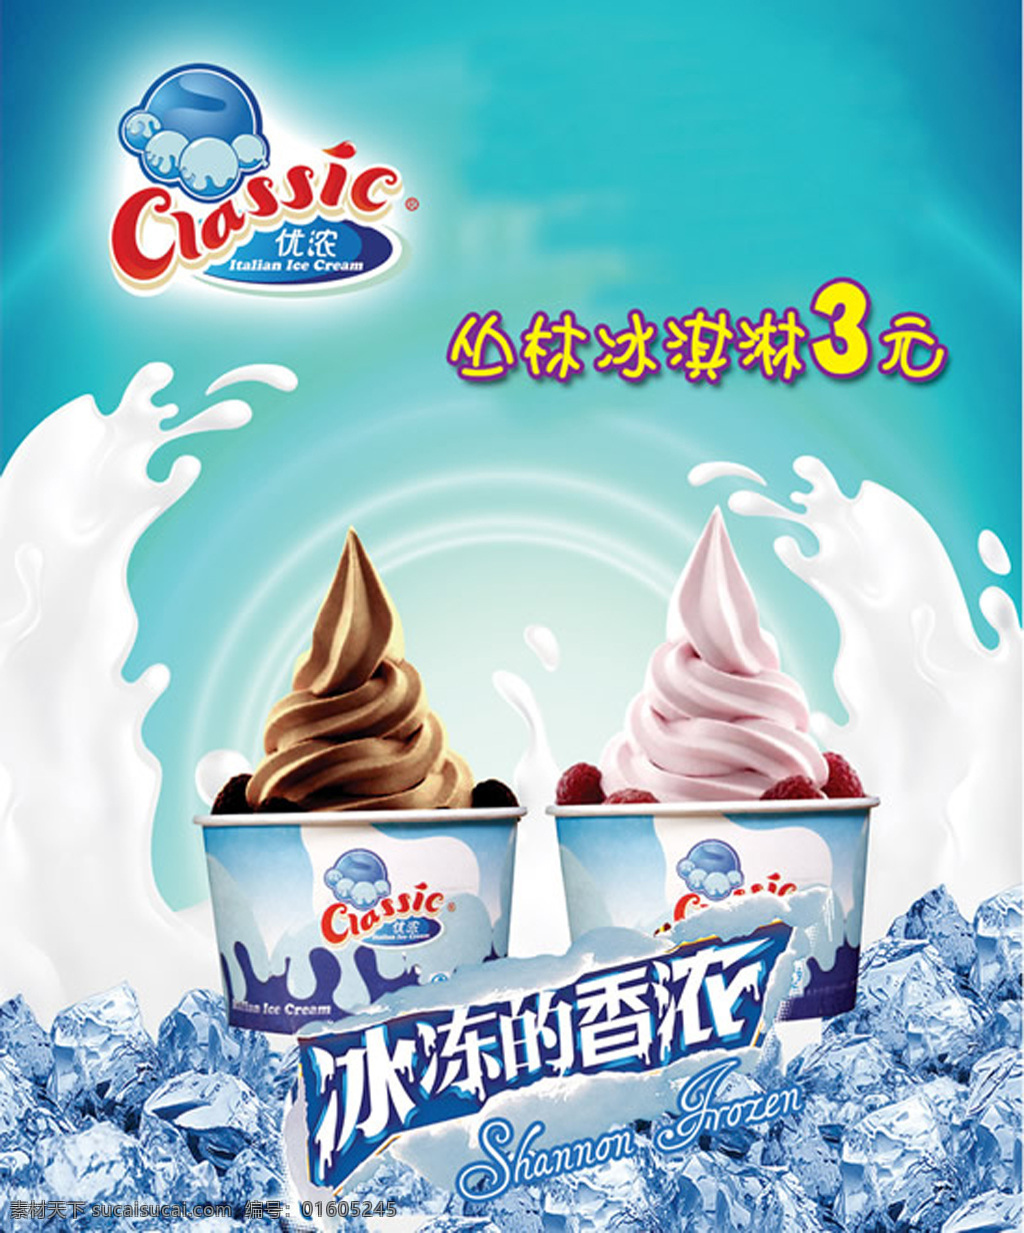 香浓冰淇淋 广告 香 浓 冰淇淋 青色 天蓝色